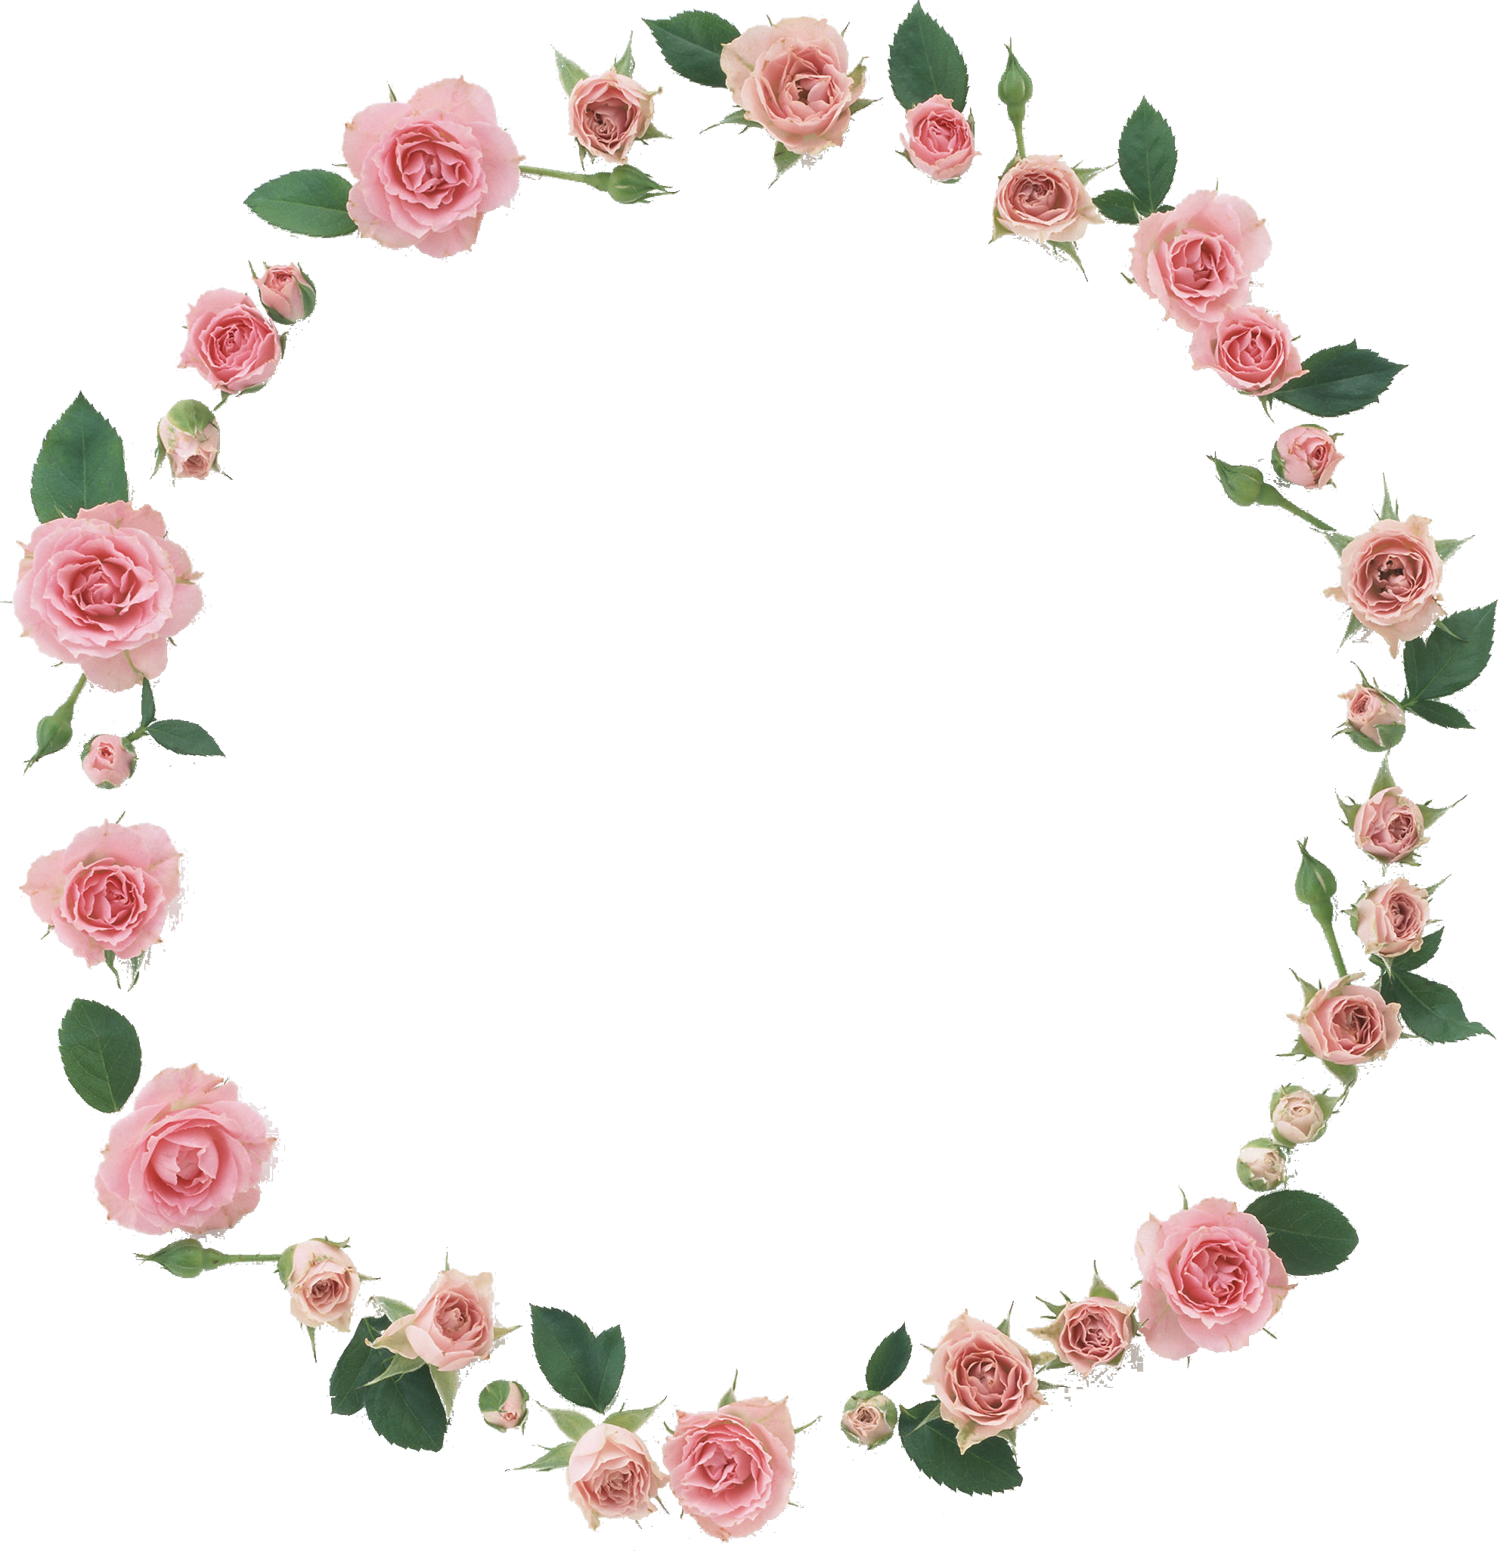 ピンクの花の写真 フリー素材 No 535 ピンクのバラ 葉 輪